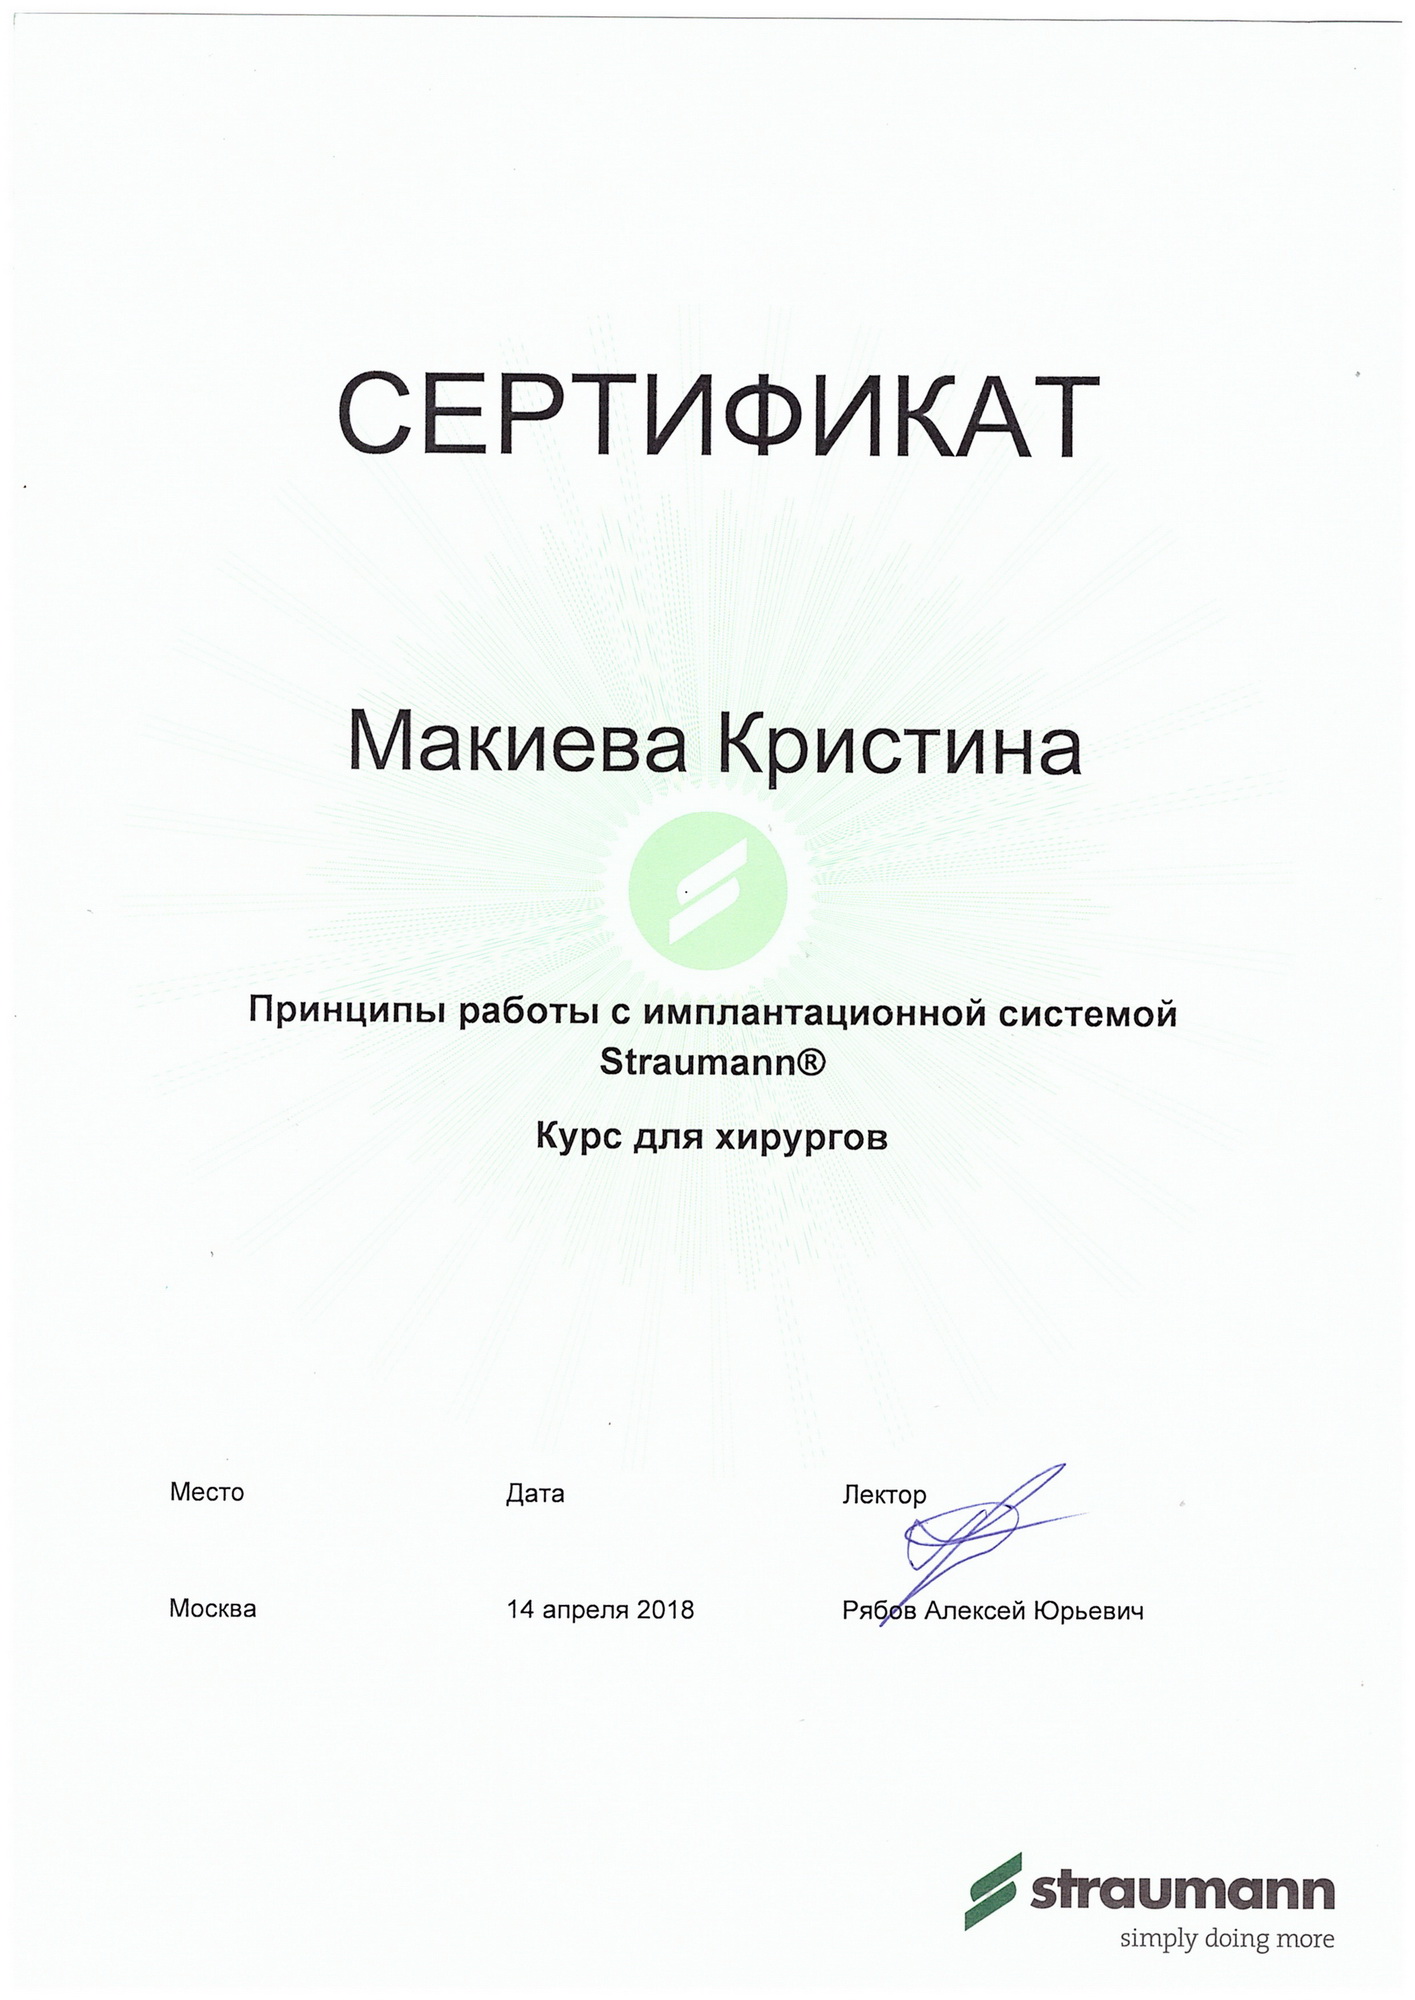 Сертификаты Макиева Кристина Сергеевна
